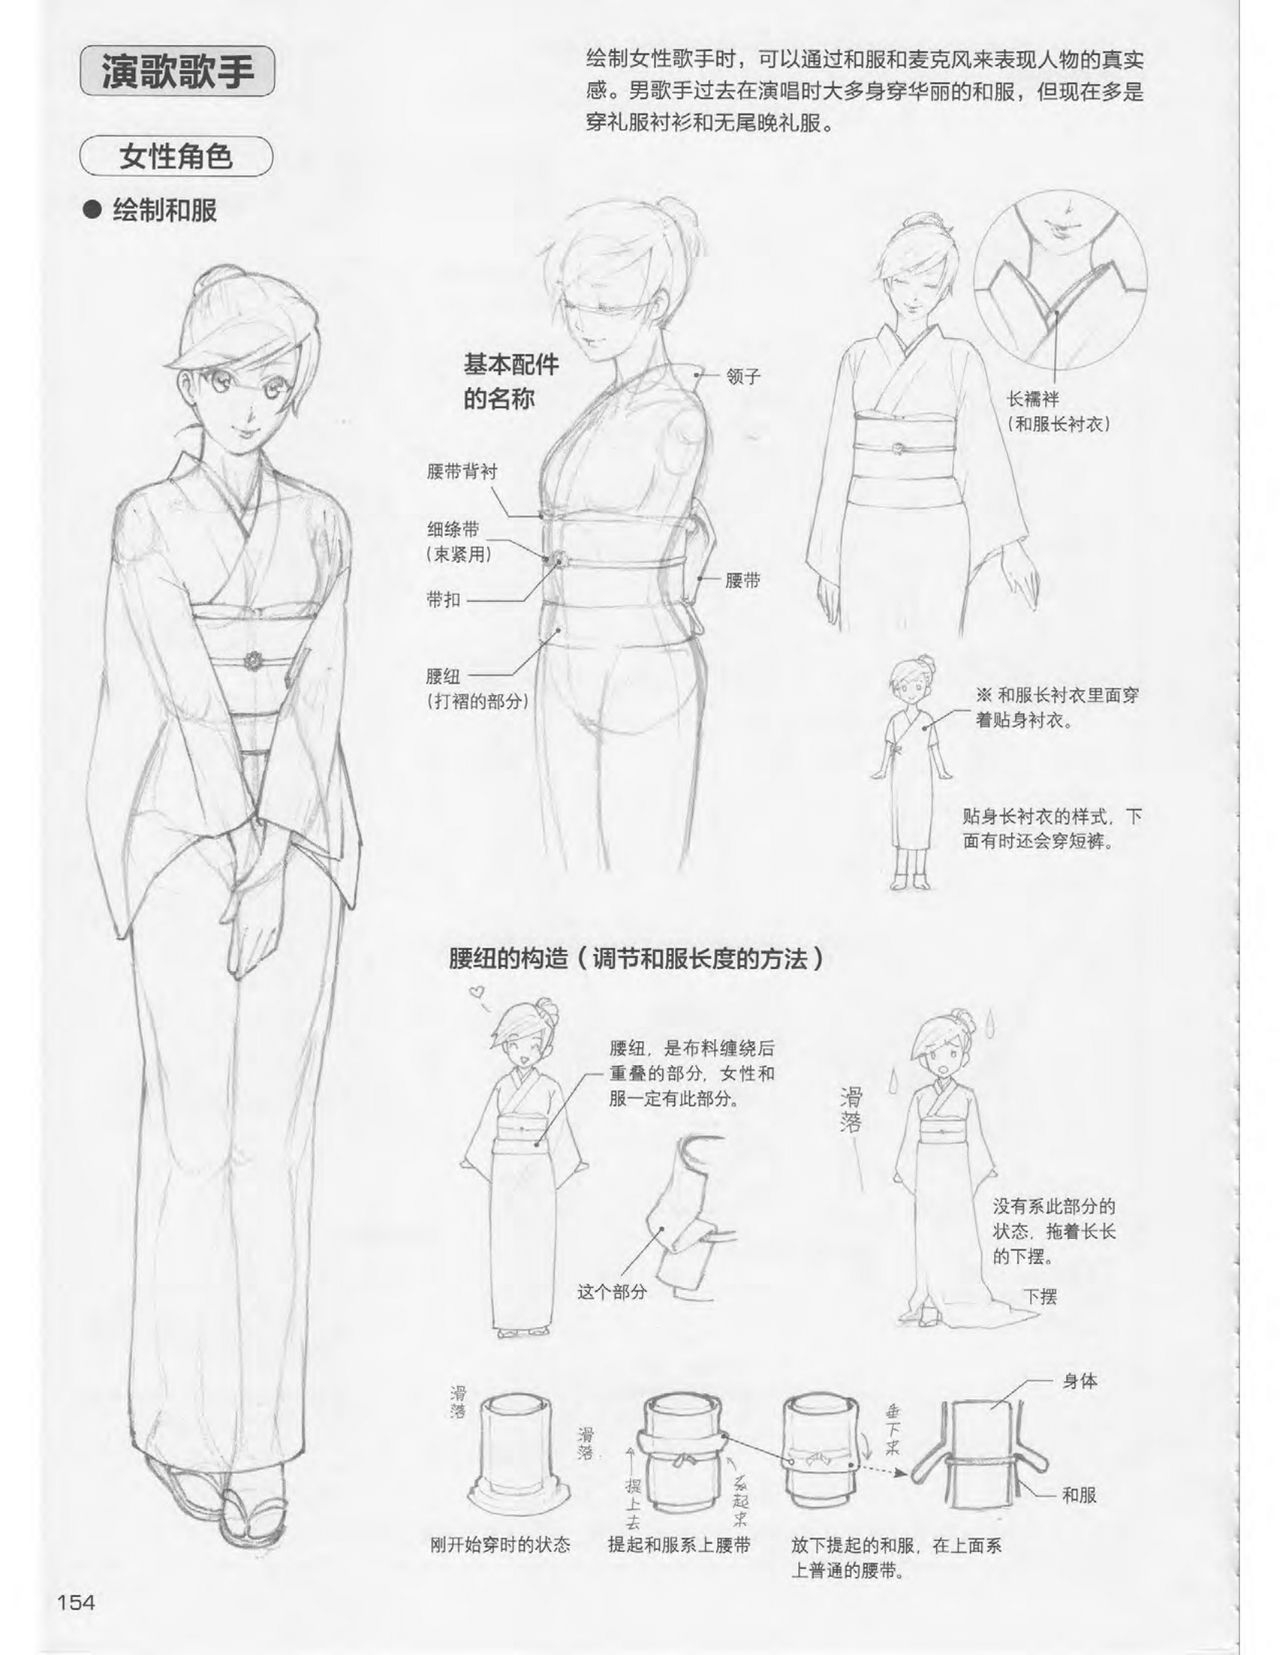 Japanese Manga Master Lecture 3: Lin Akira and Kakumaru Maru Talk About Glamorous Character Modeling 153